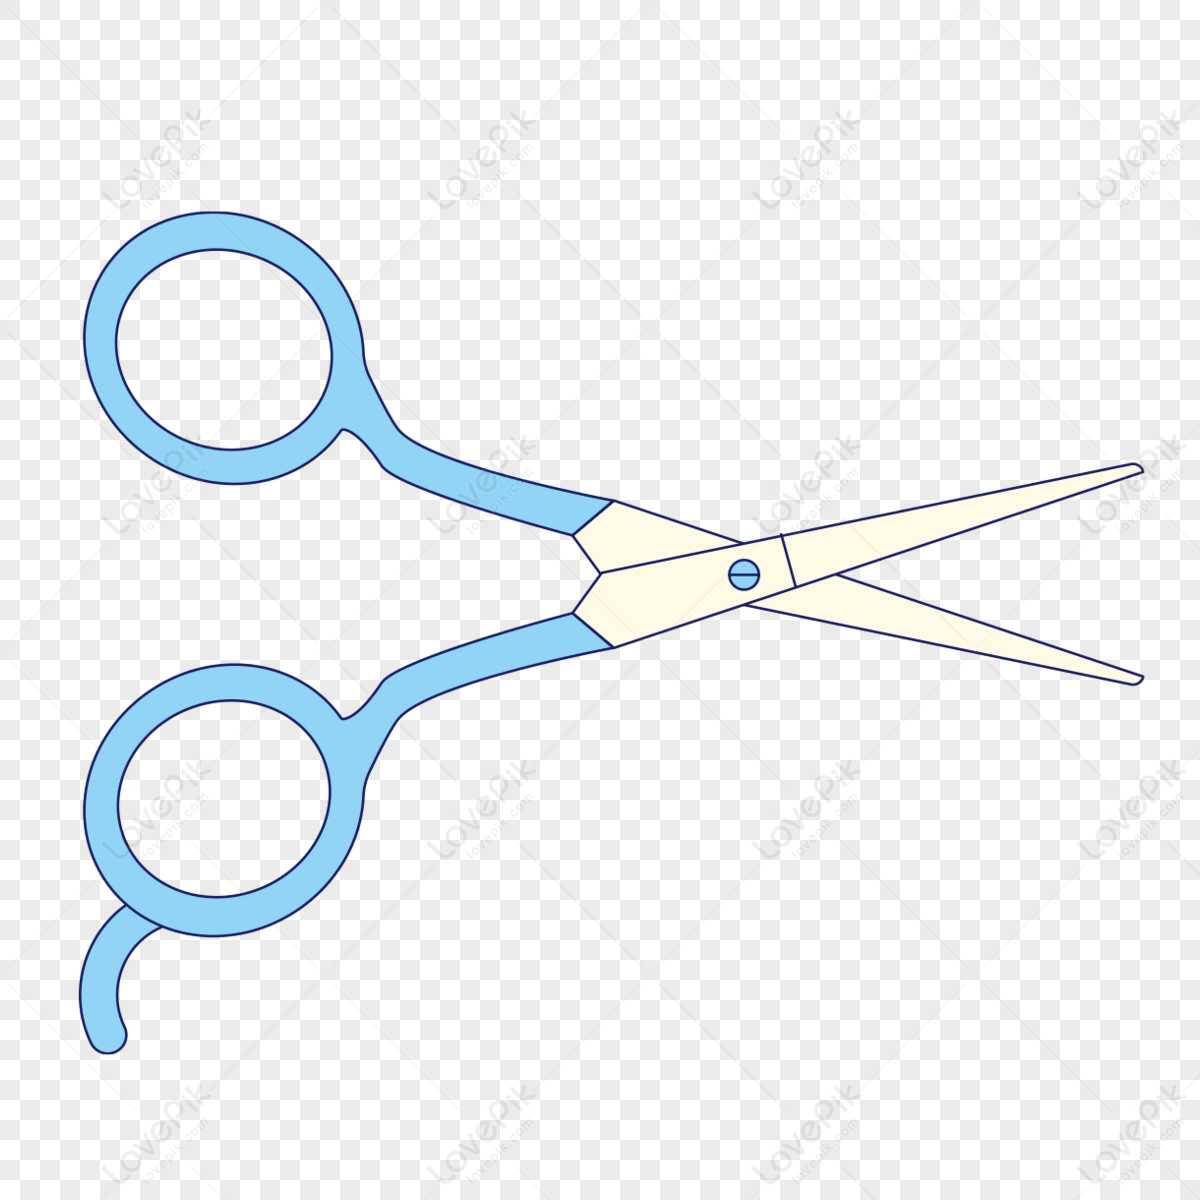 Blue Scissors PNG Clip Art - Best WEB Clipart